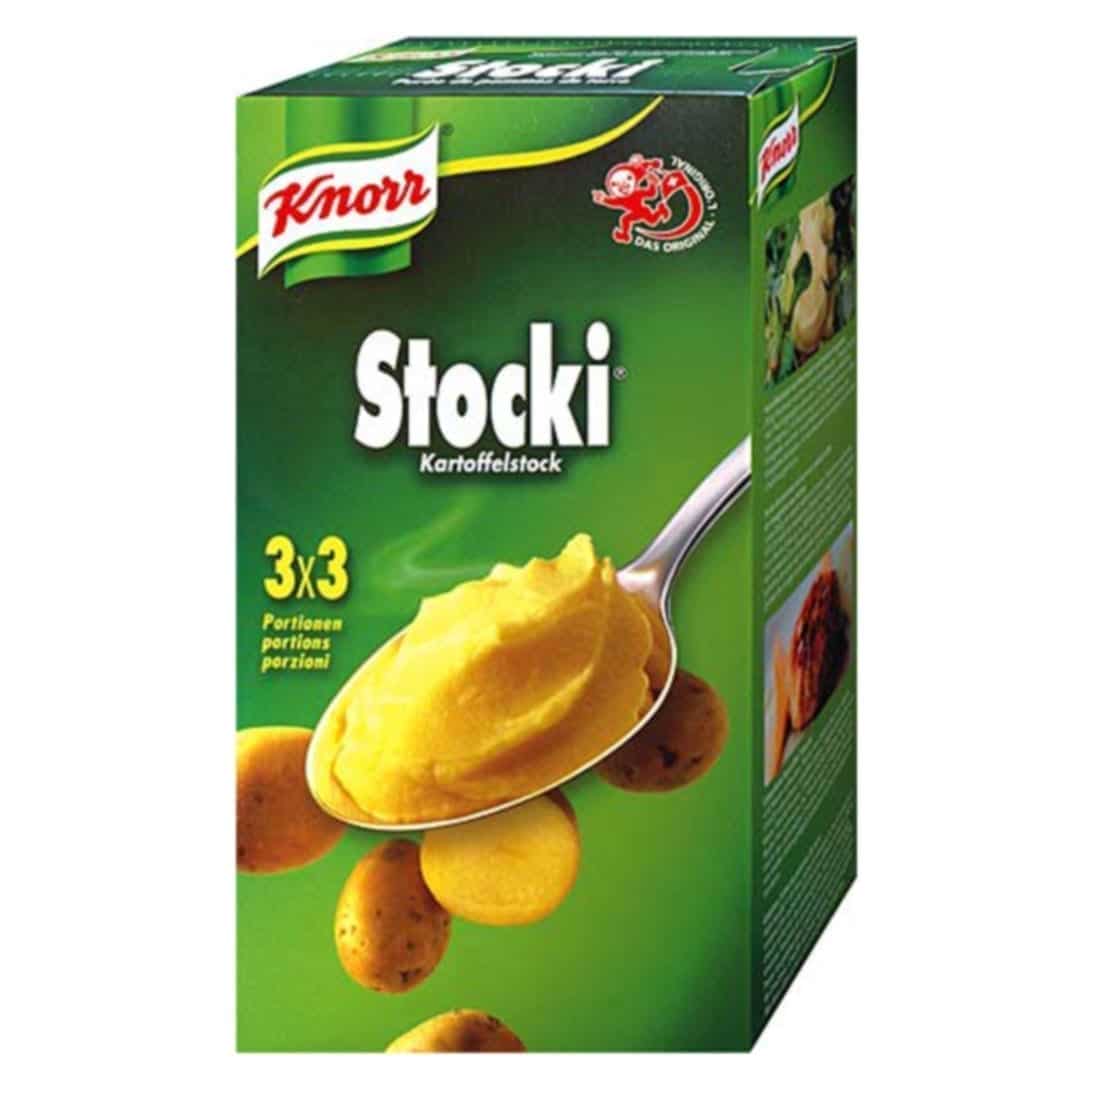 Stocki-knorr-purée de pommes de terre